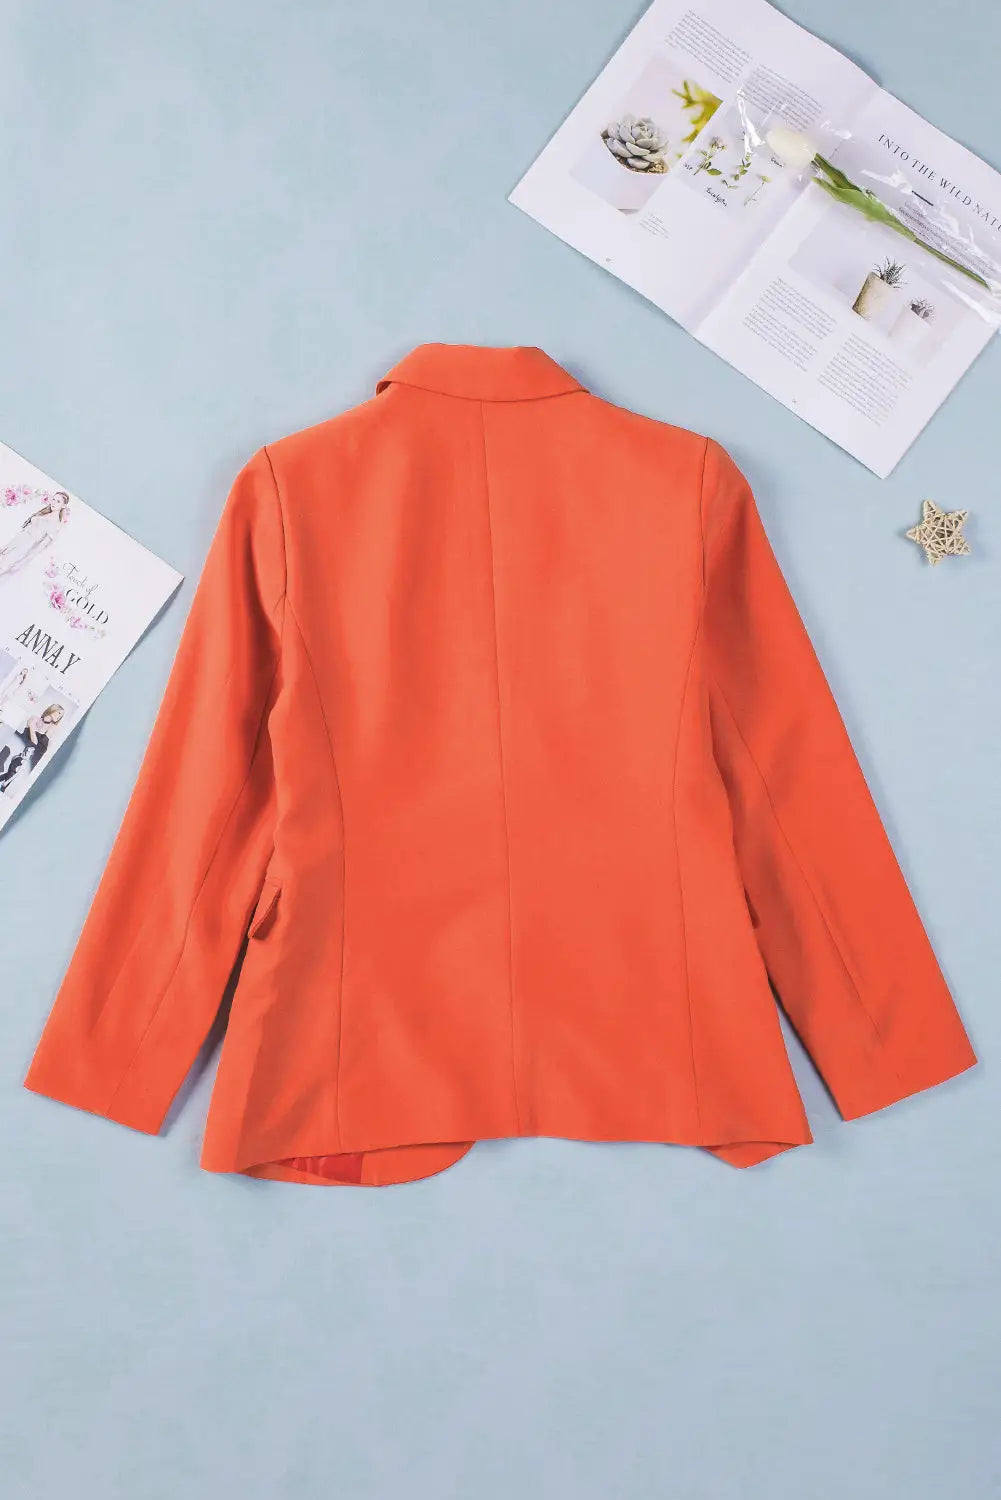 Flip pocket design chic blazer coat - outerwear